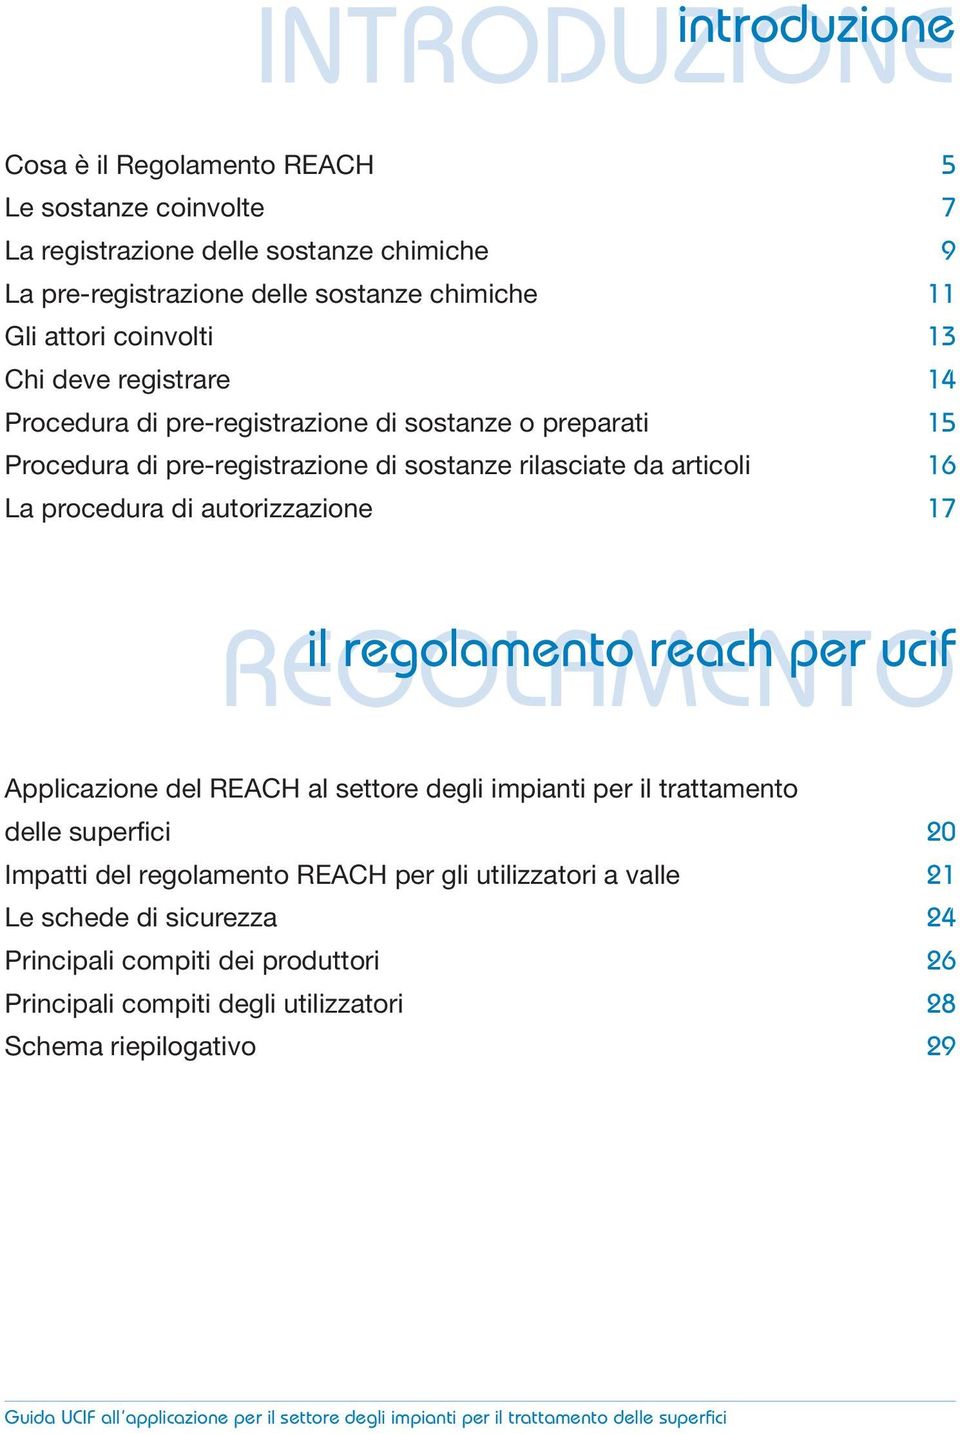 regolamento reach per ucif REGOLAMENTO Applicazione del REACH al settore degli impianti per il trattamento delle superfici 20 Impatti del regolamento REACH per gli utilizzatori a valle 21 Le schede